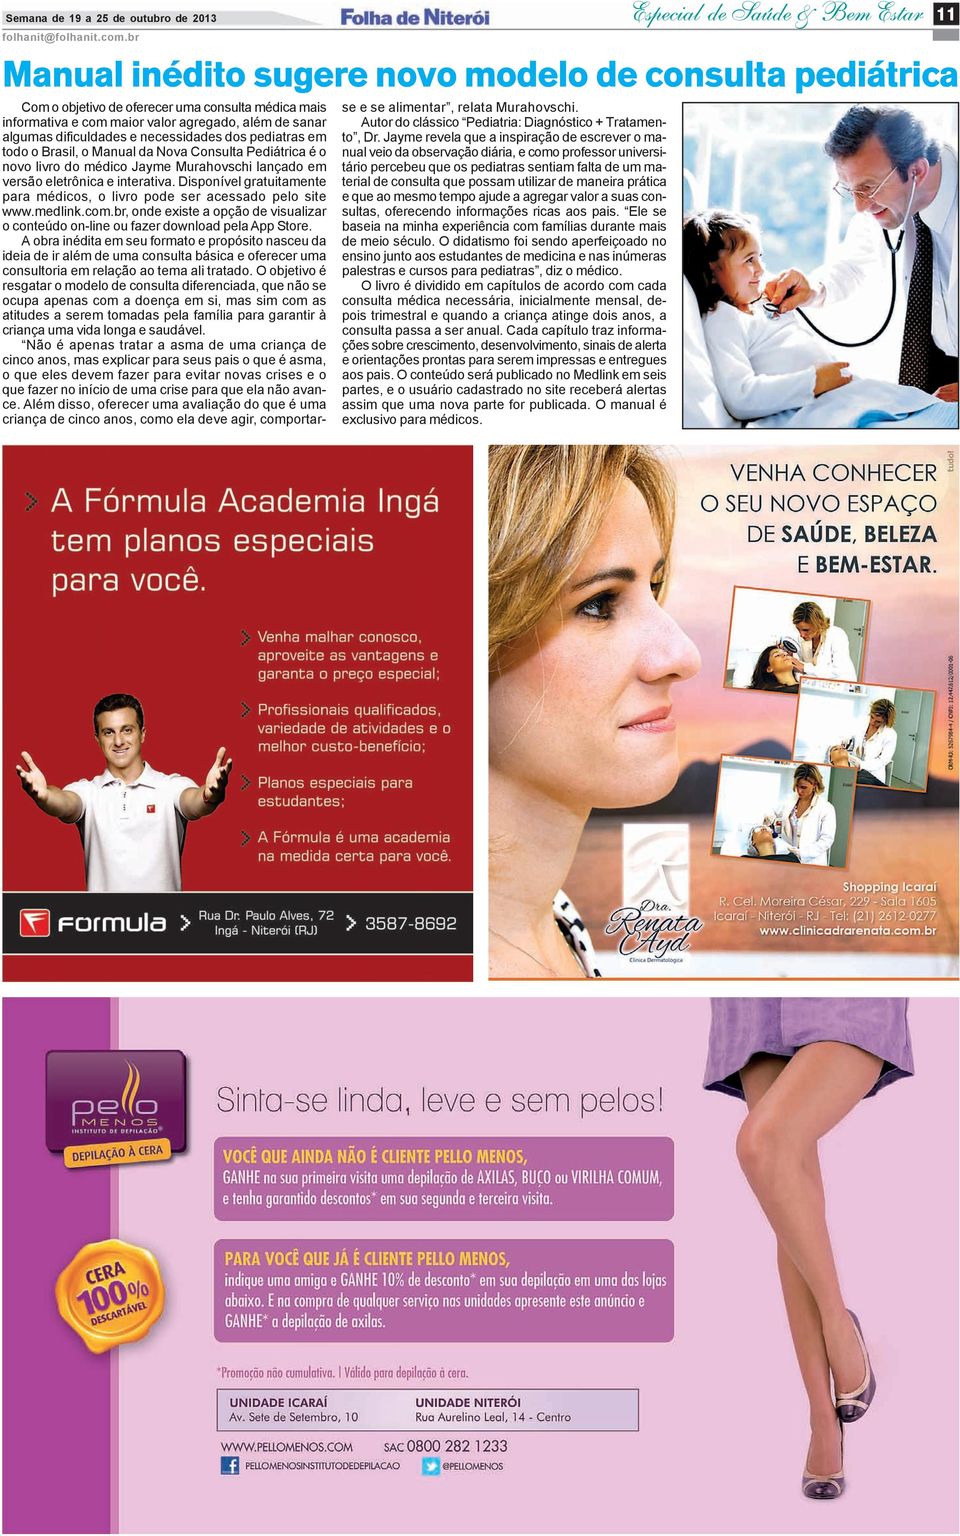 necessidades dos pediatras em todo o Brasil, o Manual da Nova Consulta Pediátrica é o novo livro do médico Jayme Murahovschi lançado em versão eletrônica e interativa.